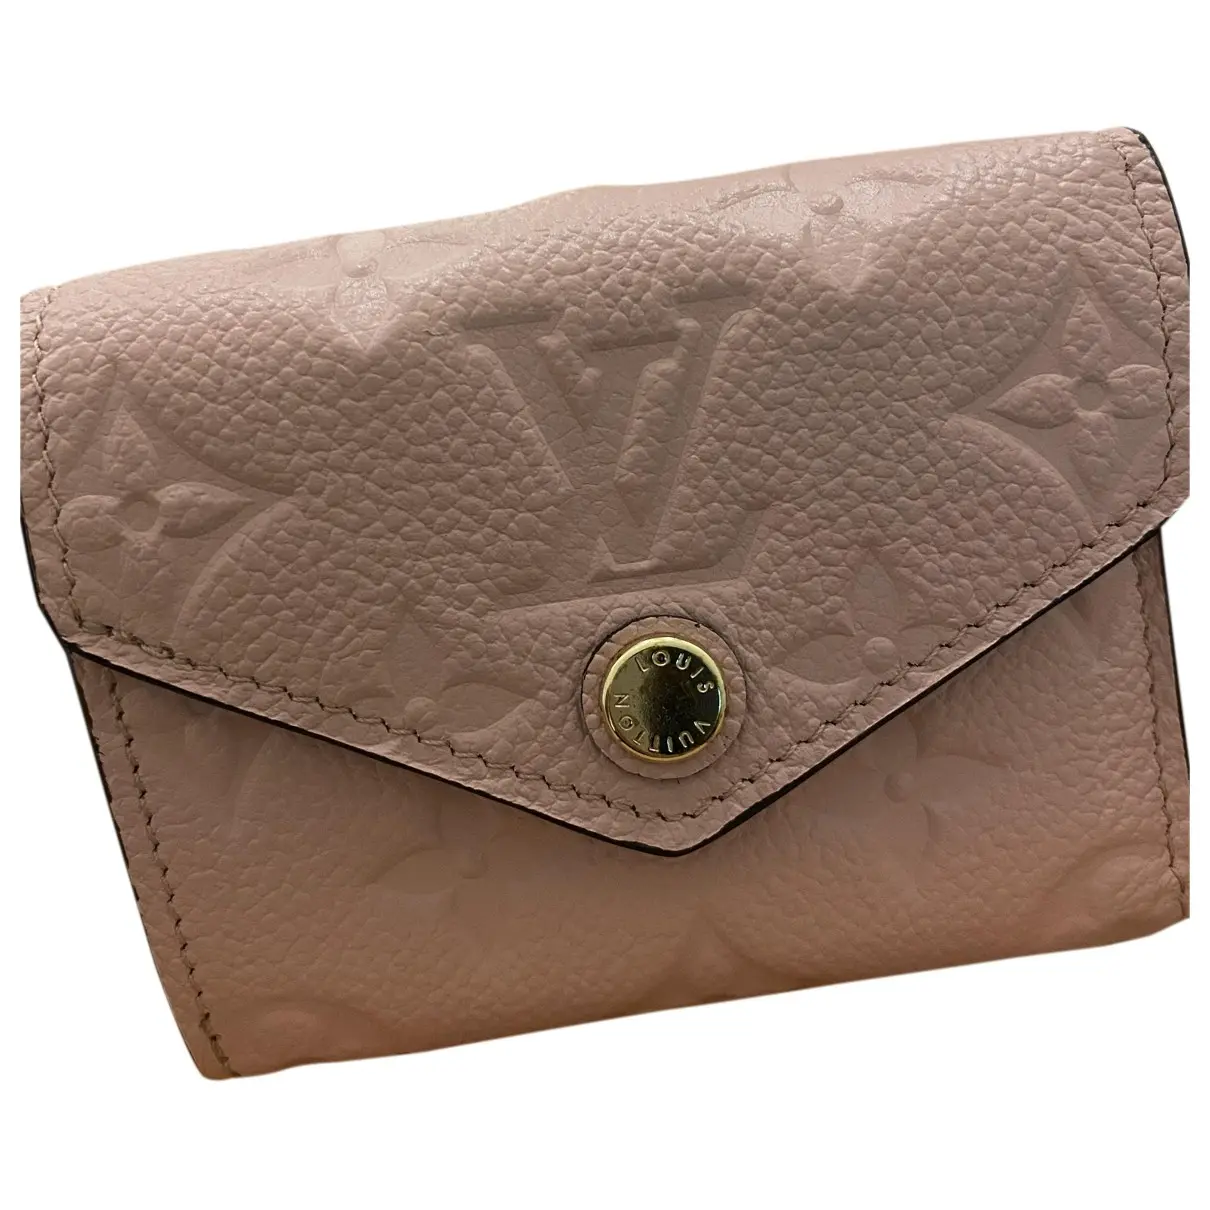 Zoé leather wallet Louis Vuitton